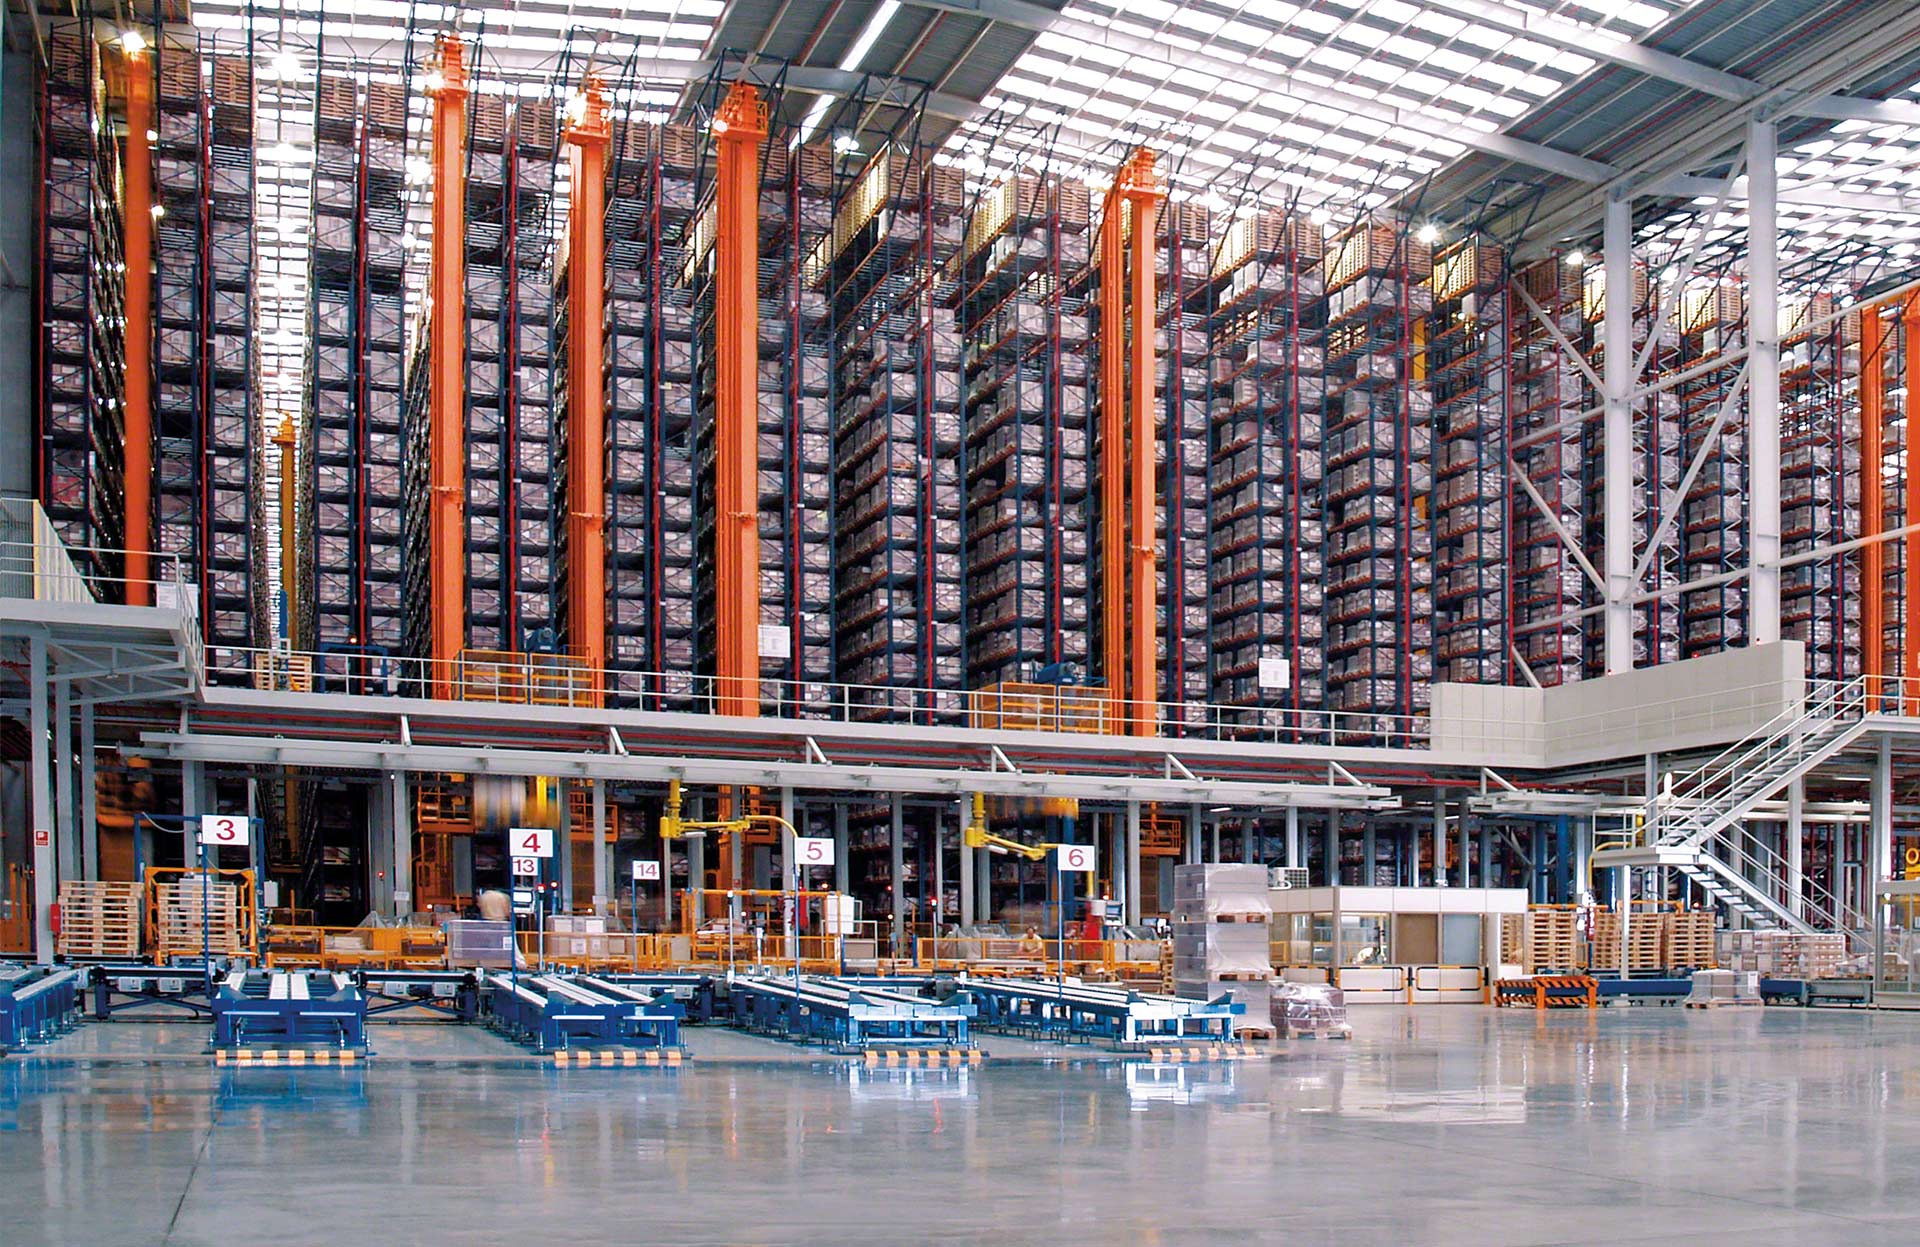 Os transelevadores aumentam a produtividade do armazém ao automatizar as operações que permitem depositar e recolher paletes